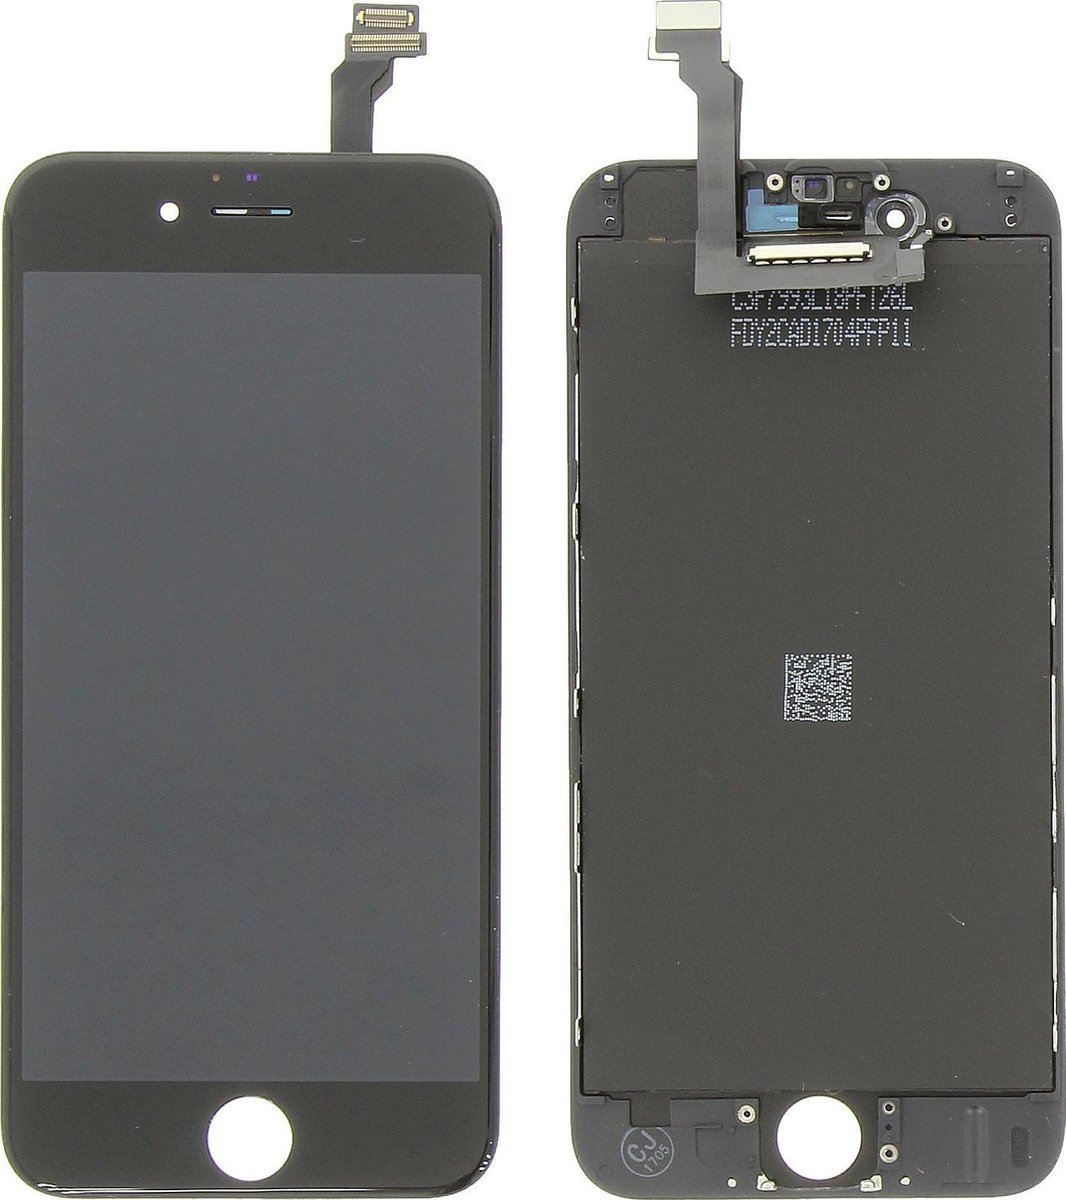 Lift Op risico wereld iPhone 6 LCD Scherm Zwart | bol.com